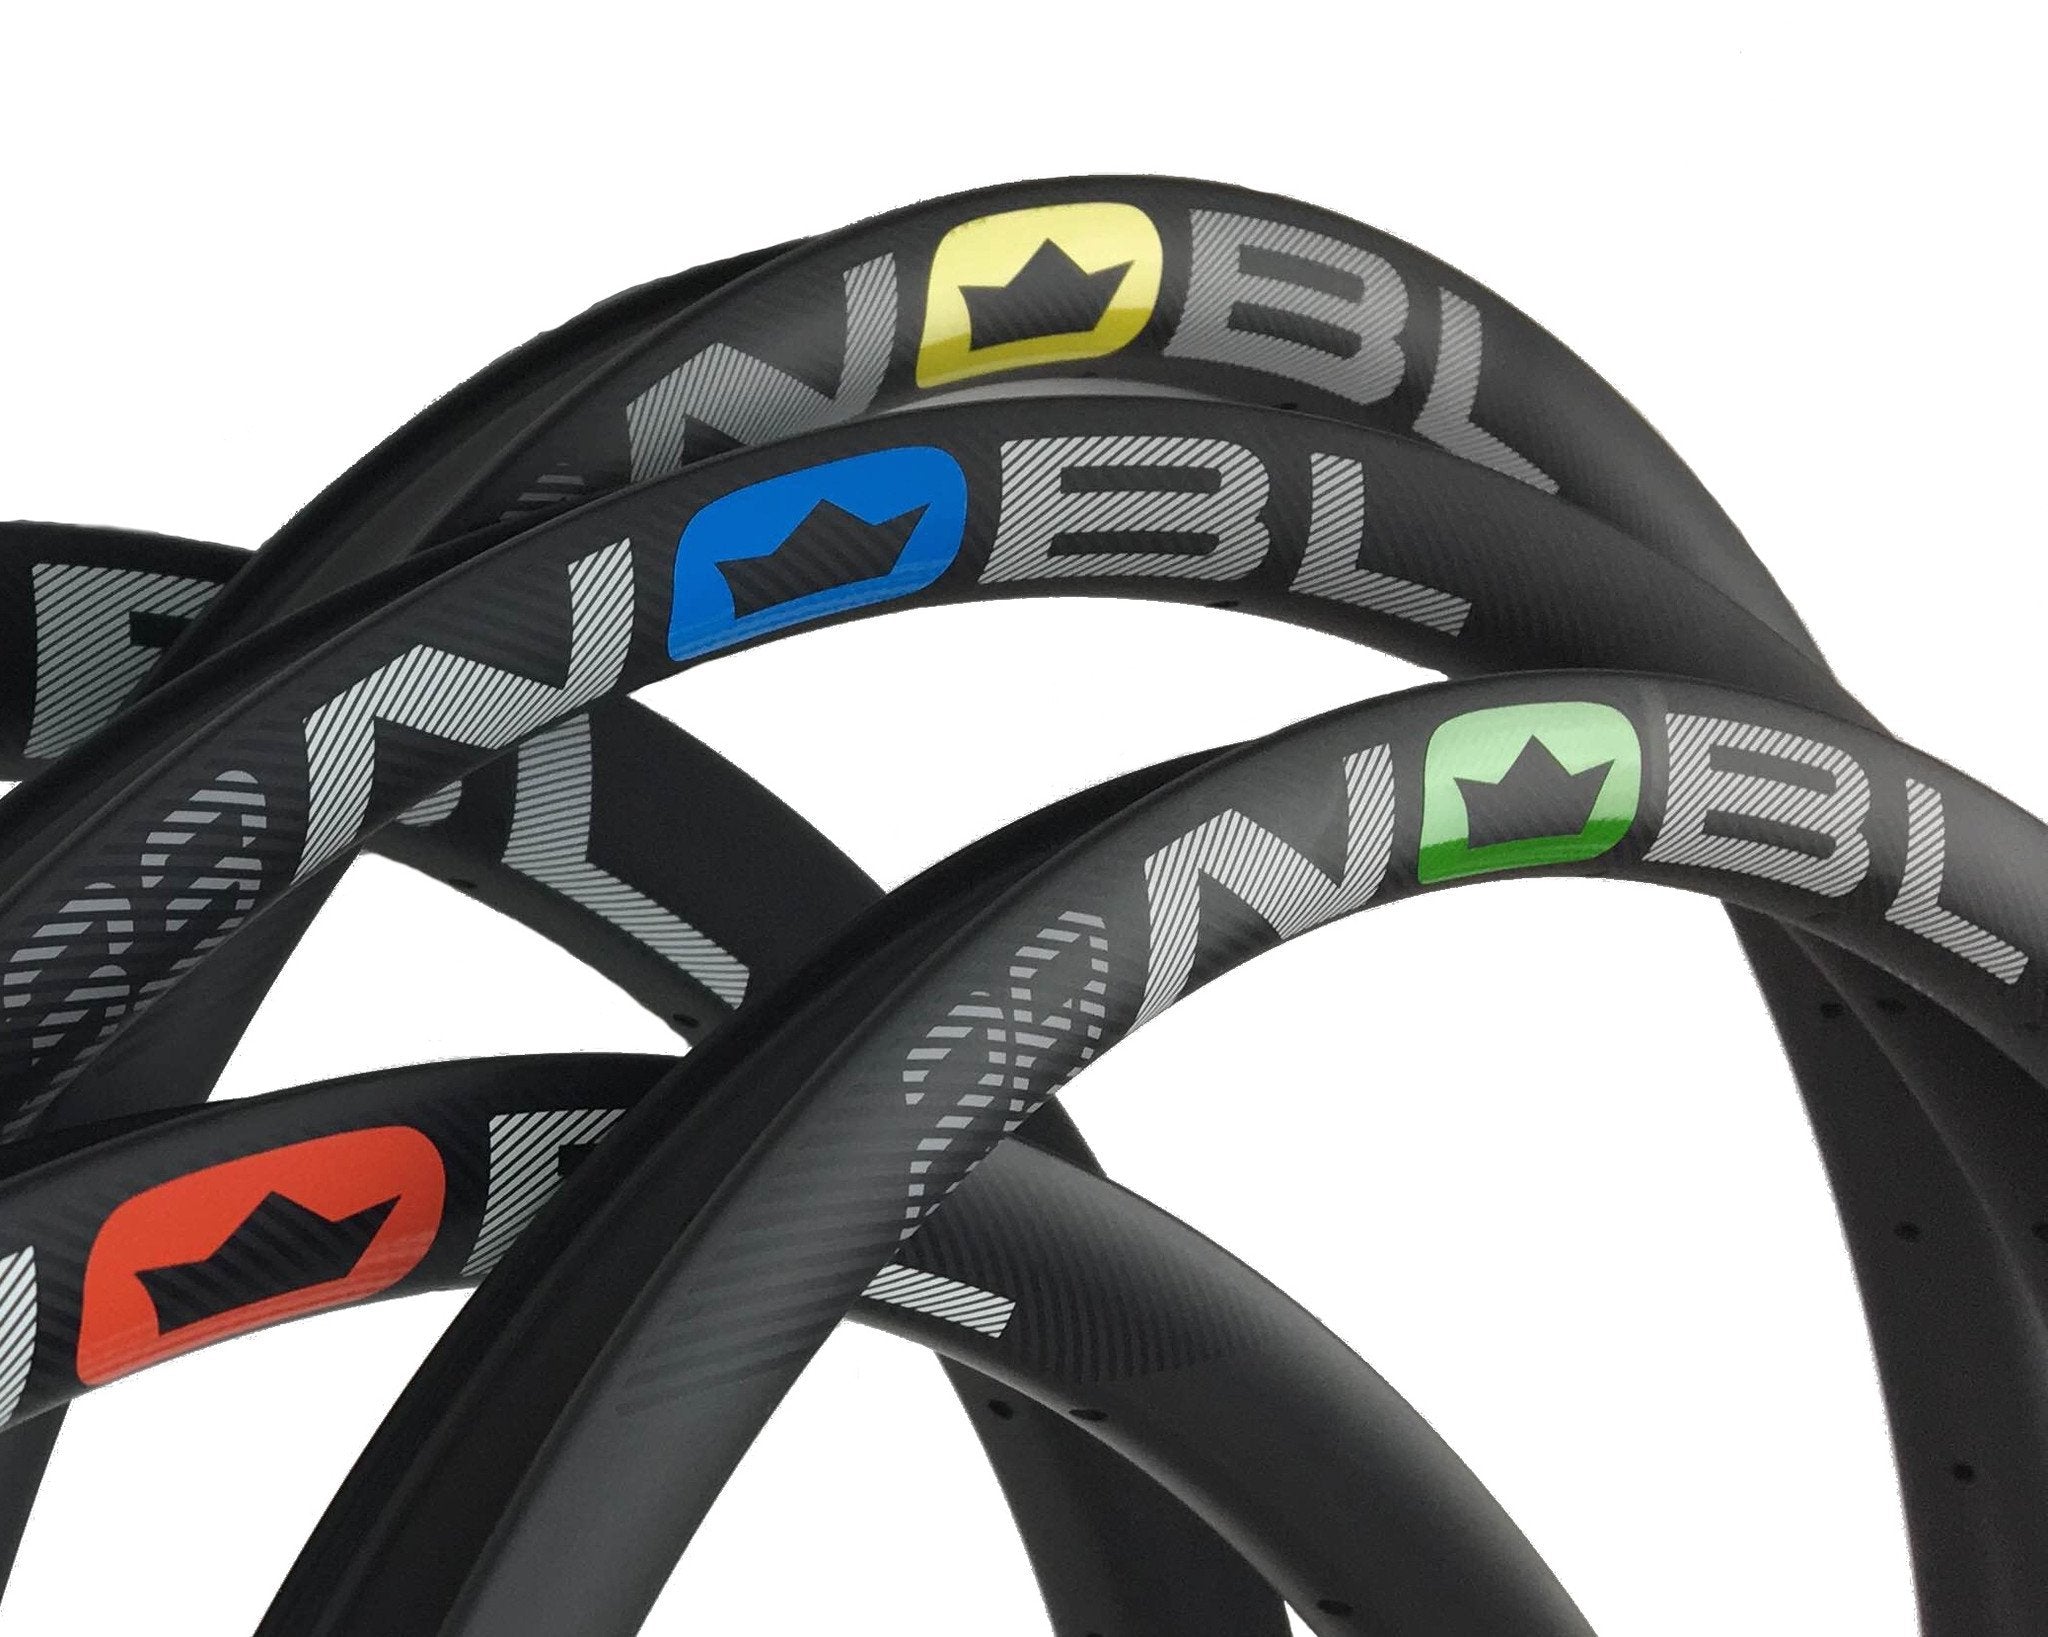 nobl carbon wheels